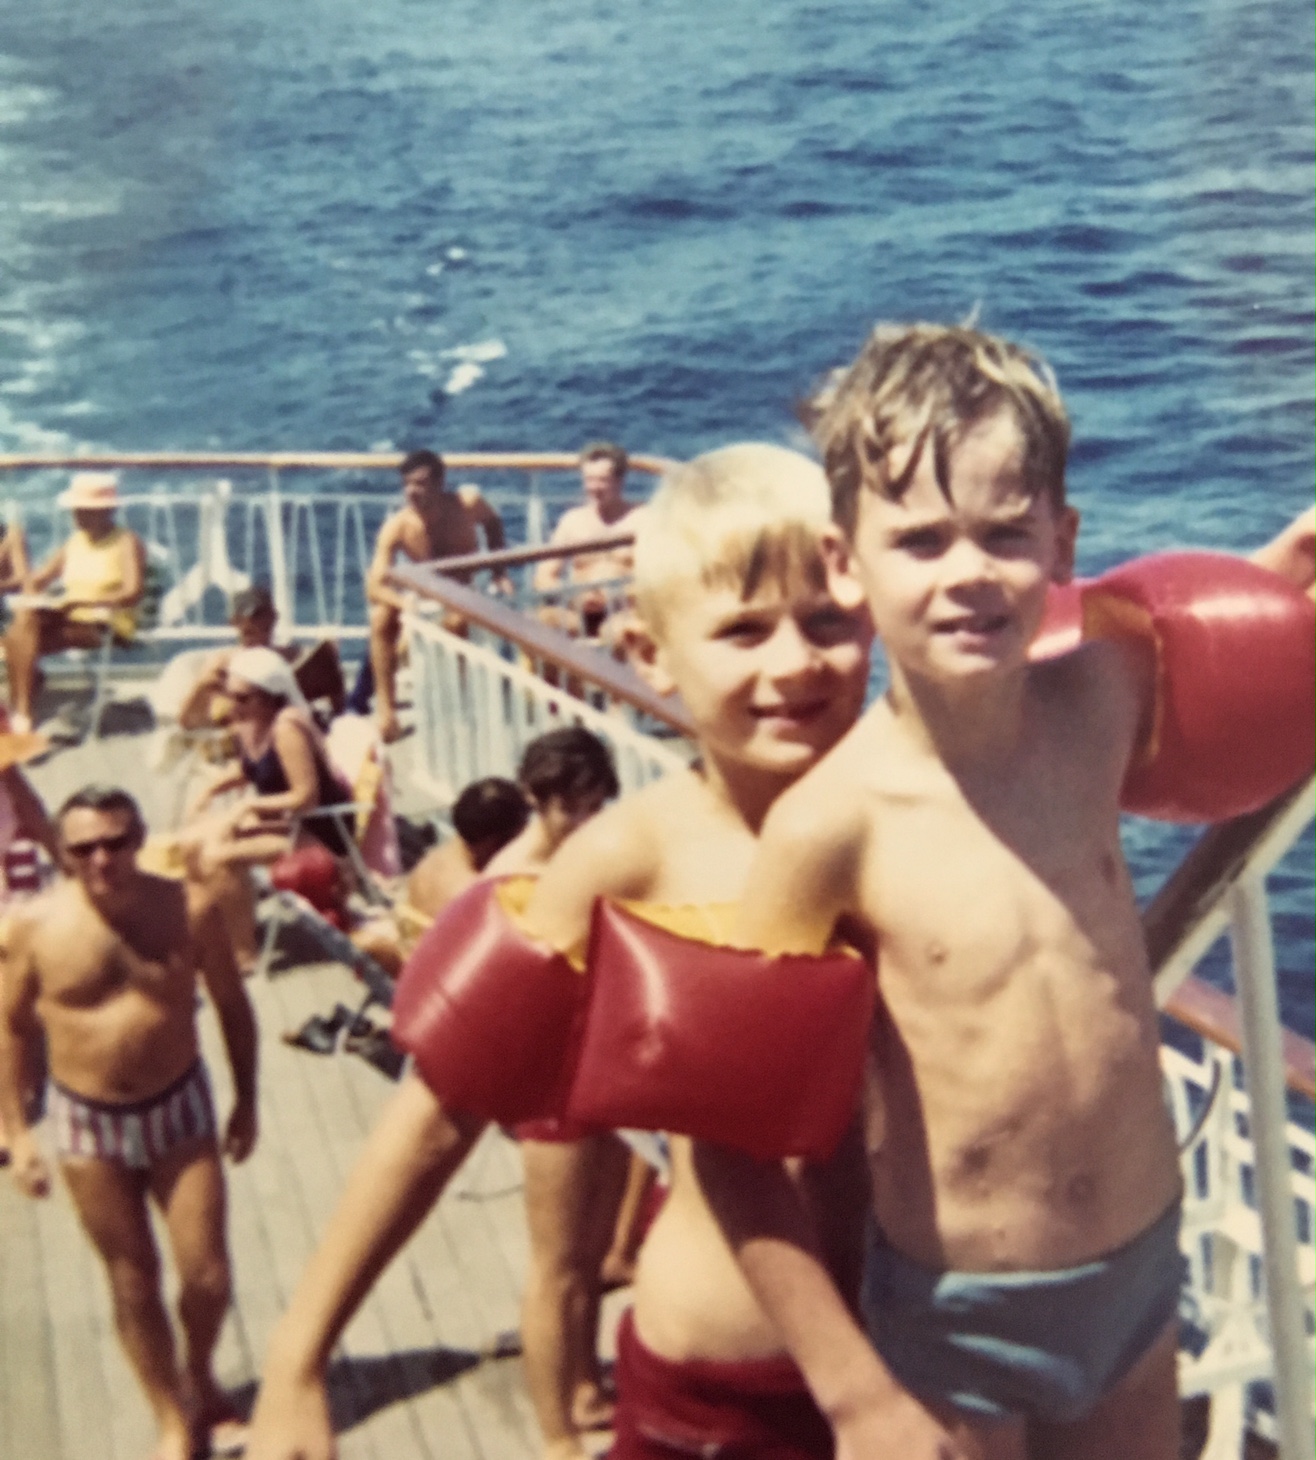 Mein Schiff Gastautor als Kind mit seinem Bruder Ulf (c) Frank Behrendt